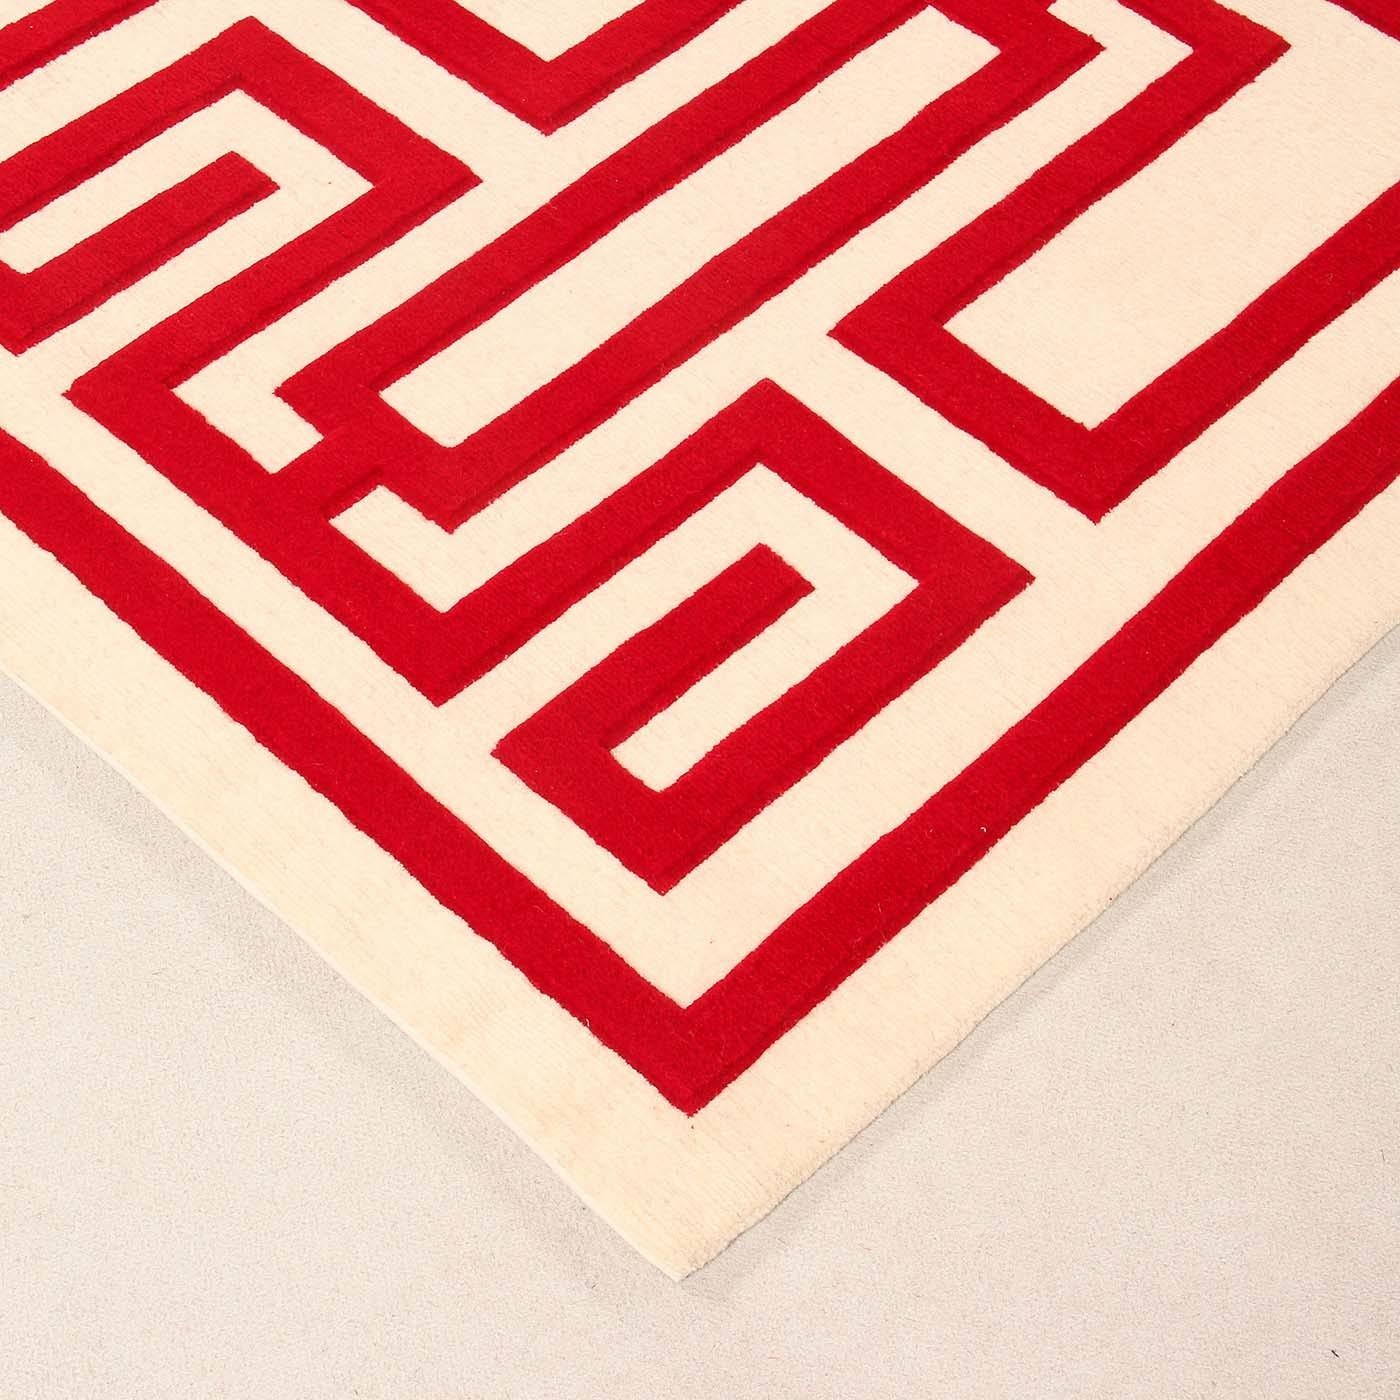 La symétrie du motif, les contrastes entre les fonds et le dessin confèrent de la profondeur au tapis Labirinto. Un intriguant motif tridimensionnel conçu à l'origine par Gio Ponti pour recréer une texture de diamant contemporaine, mais classique.